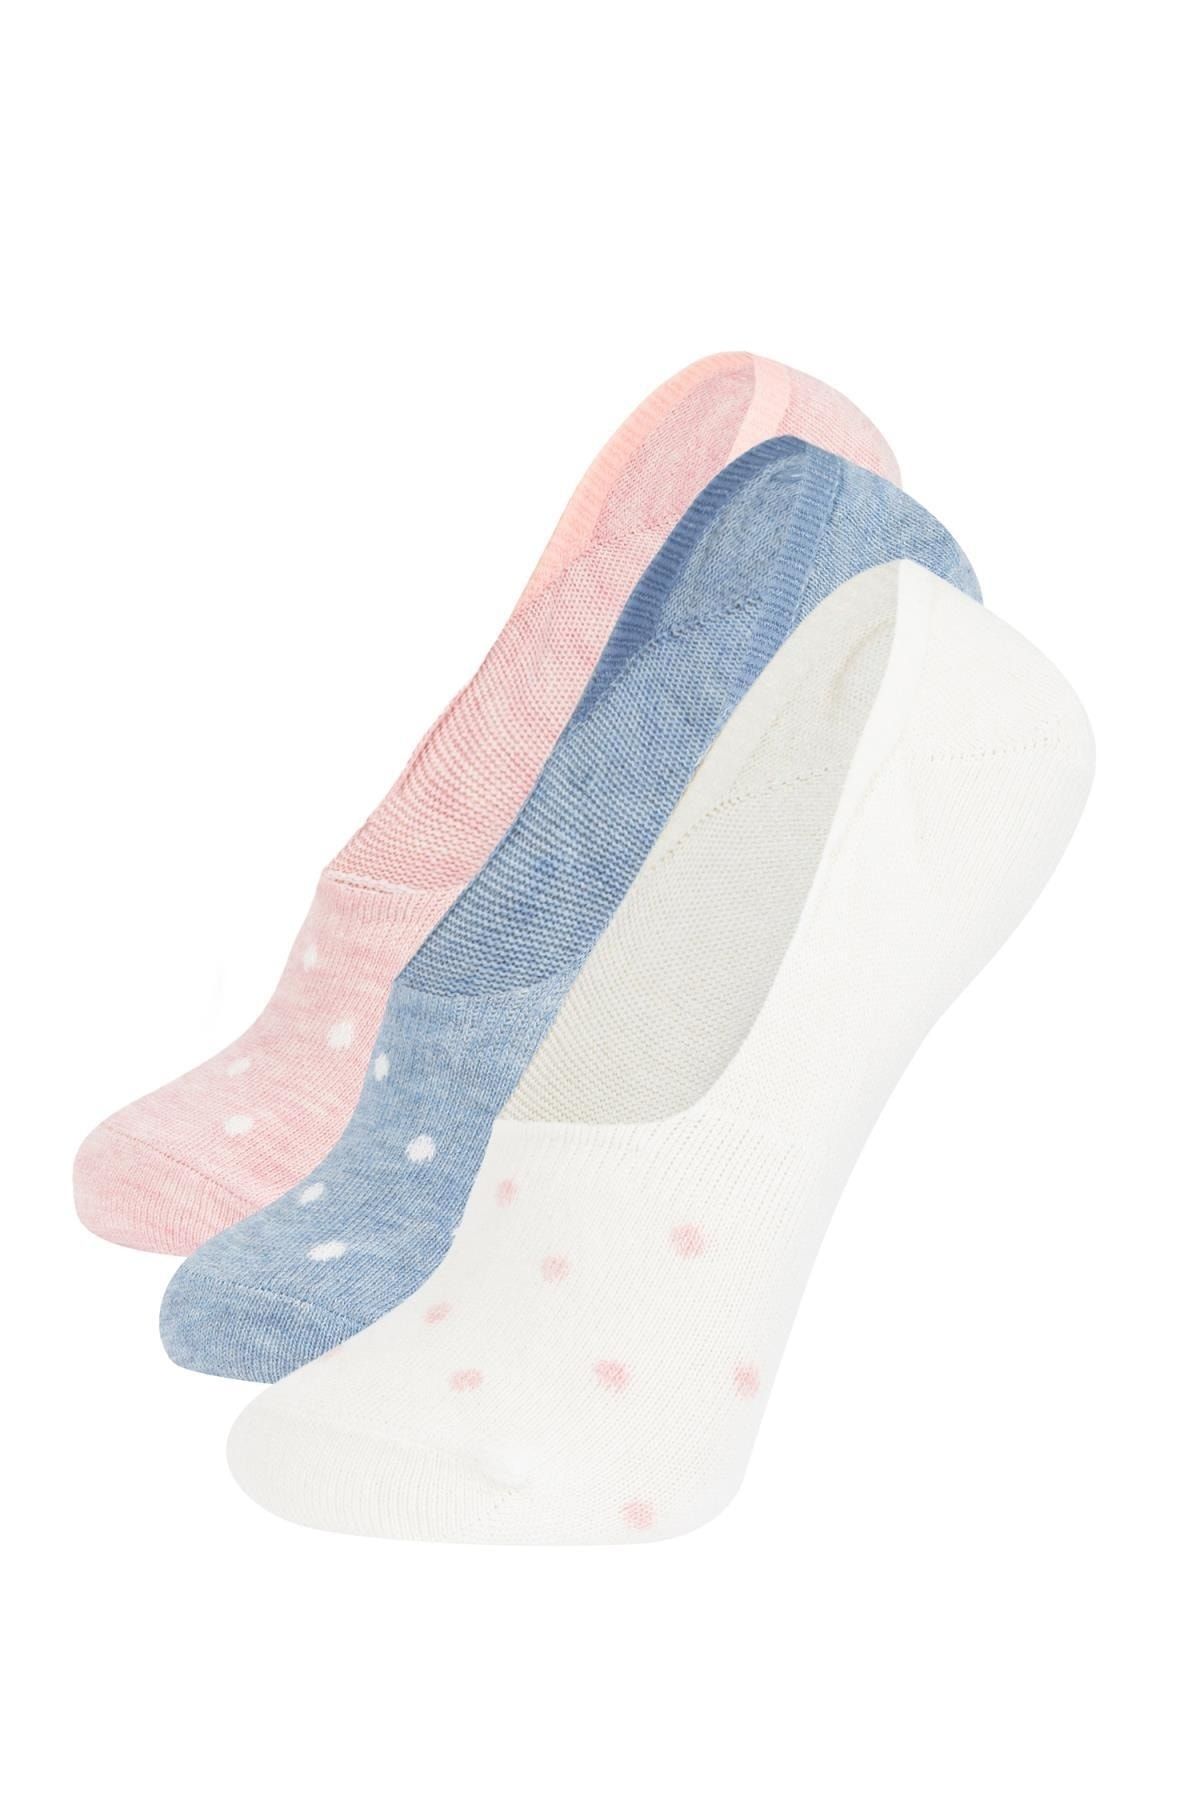 Defacto Kadın 3'lü Pamuklu Babet Çorap Z7560azns